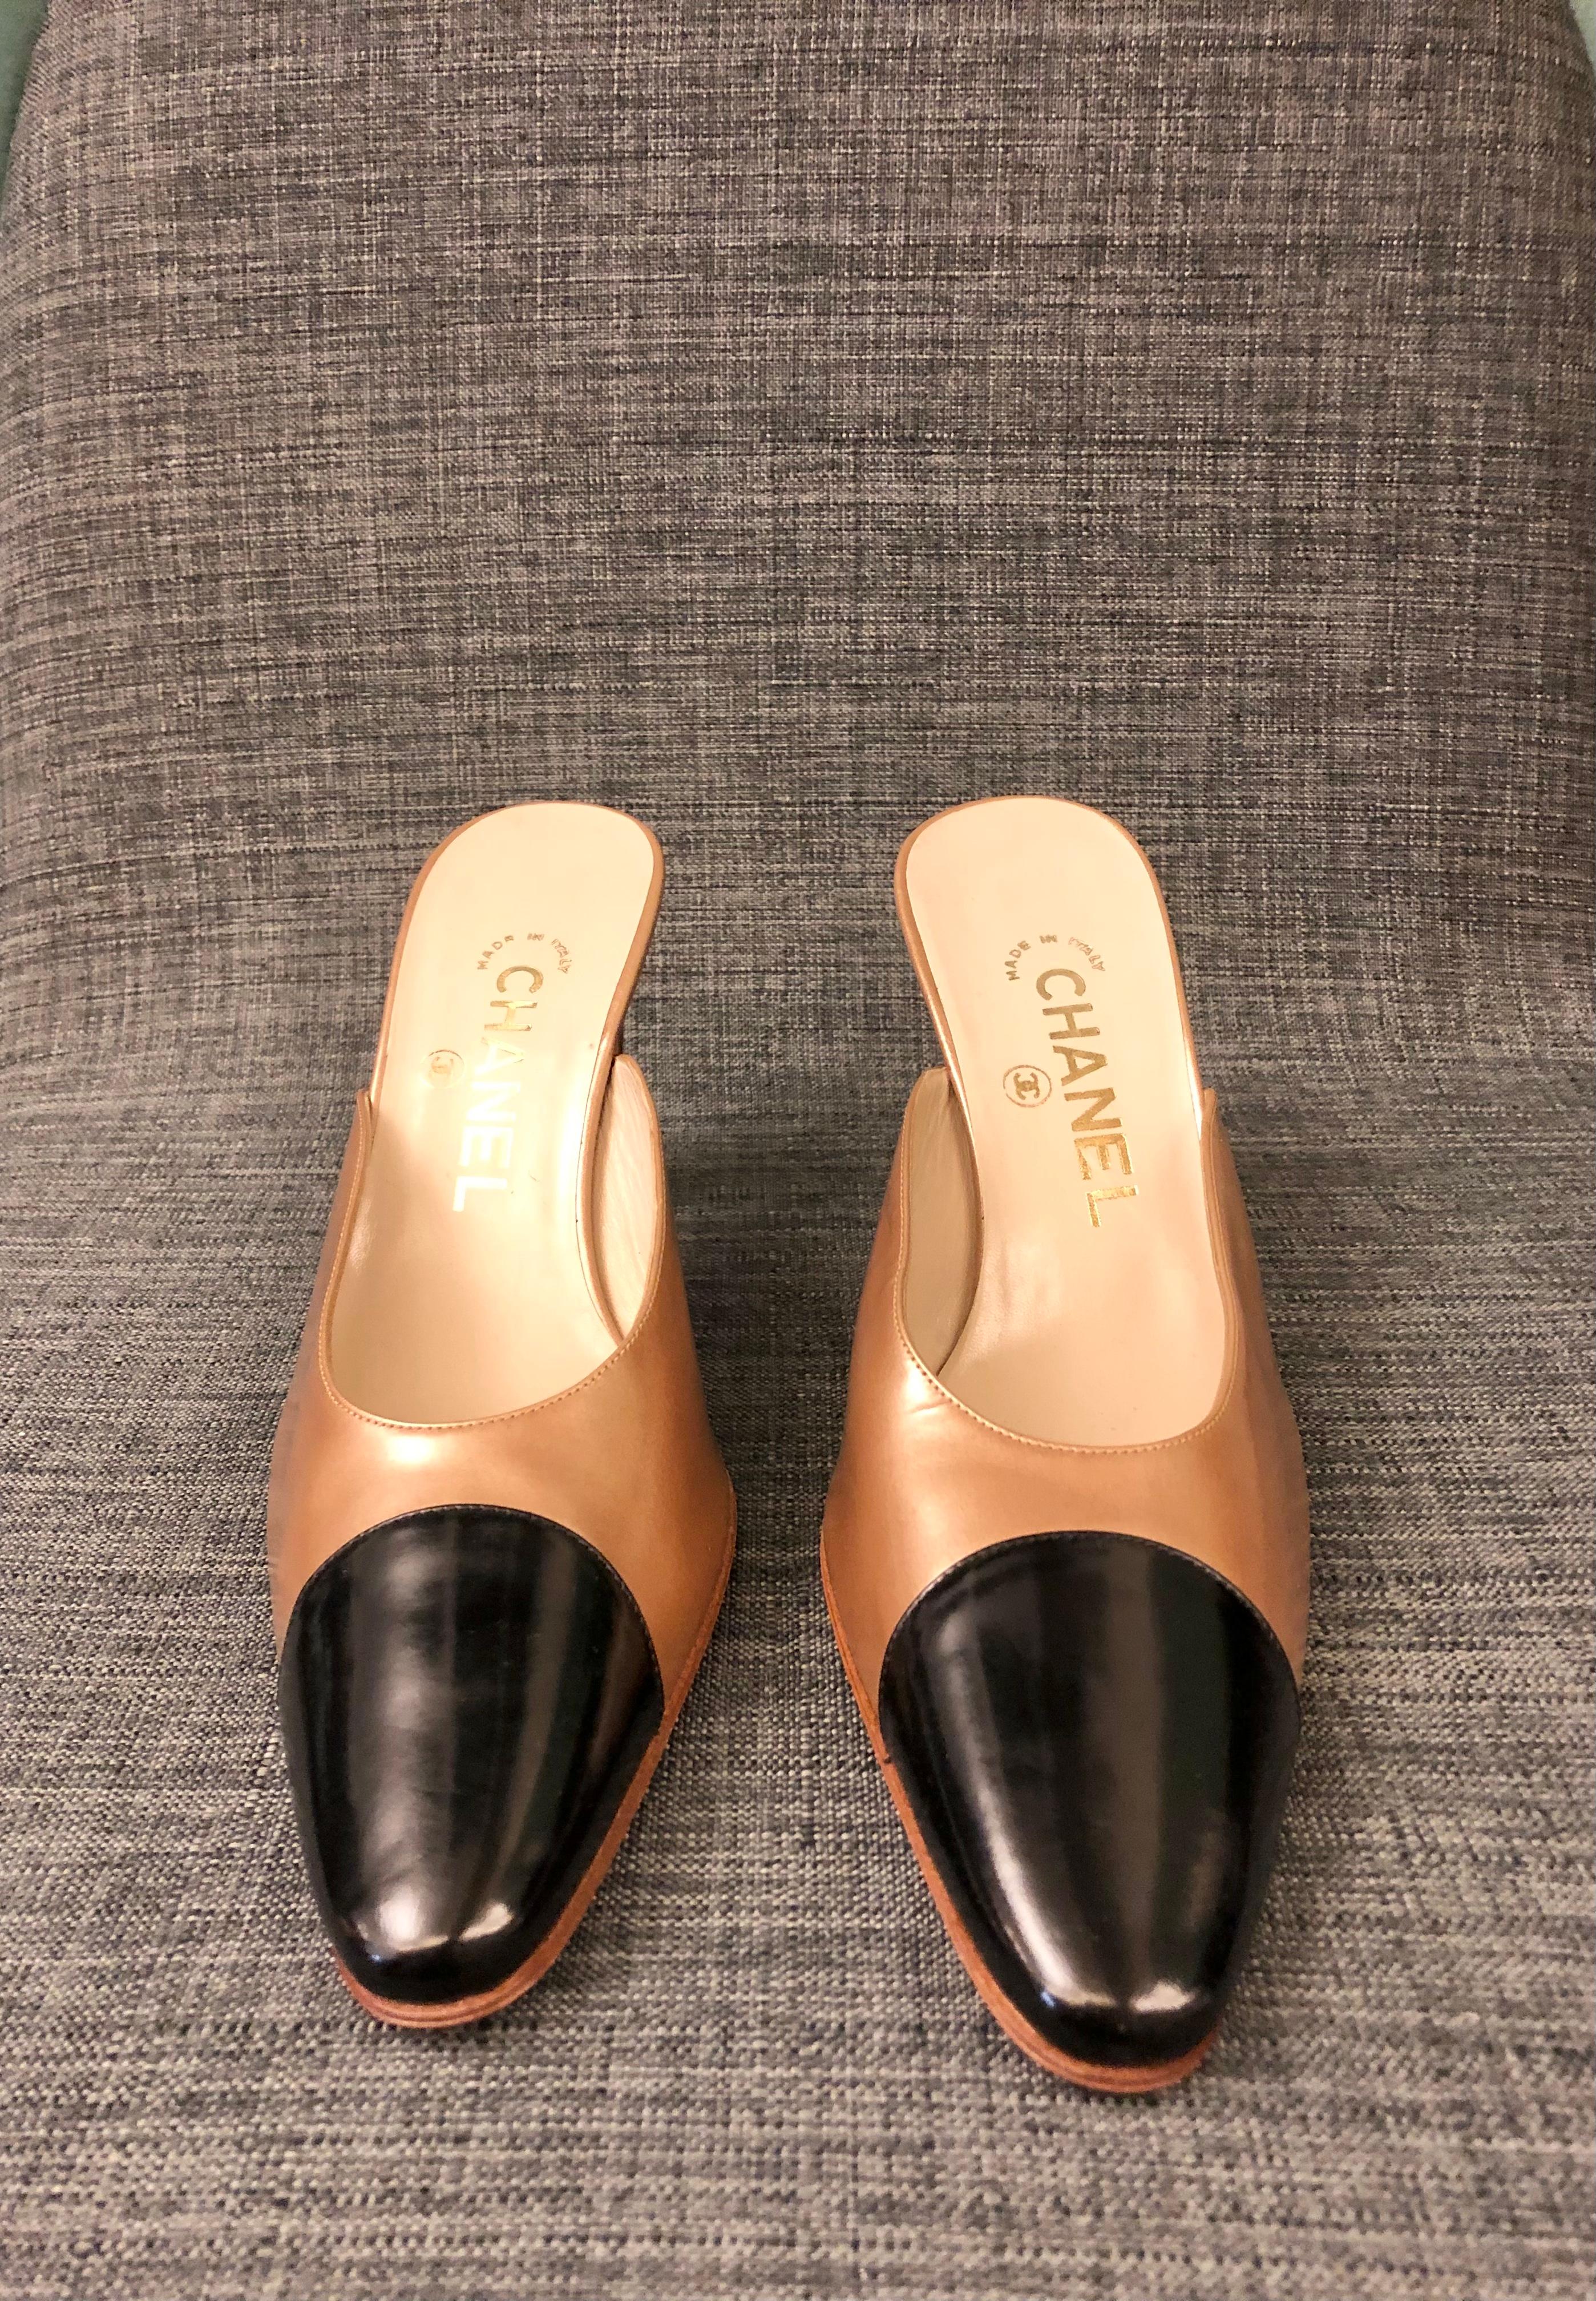 - Unworn vintage 90s Chanel bi toned bronze/black patent heels 

- Size 38.5 